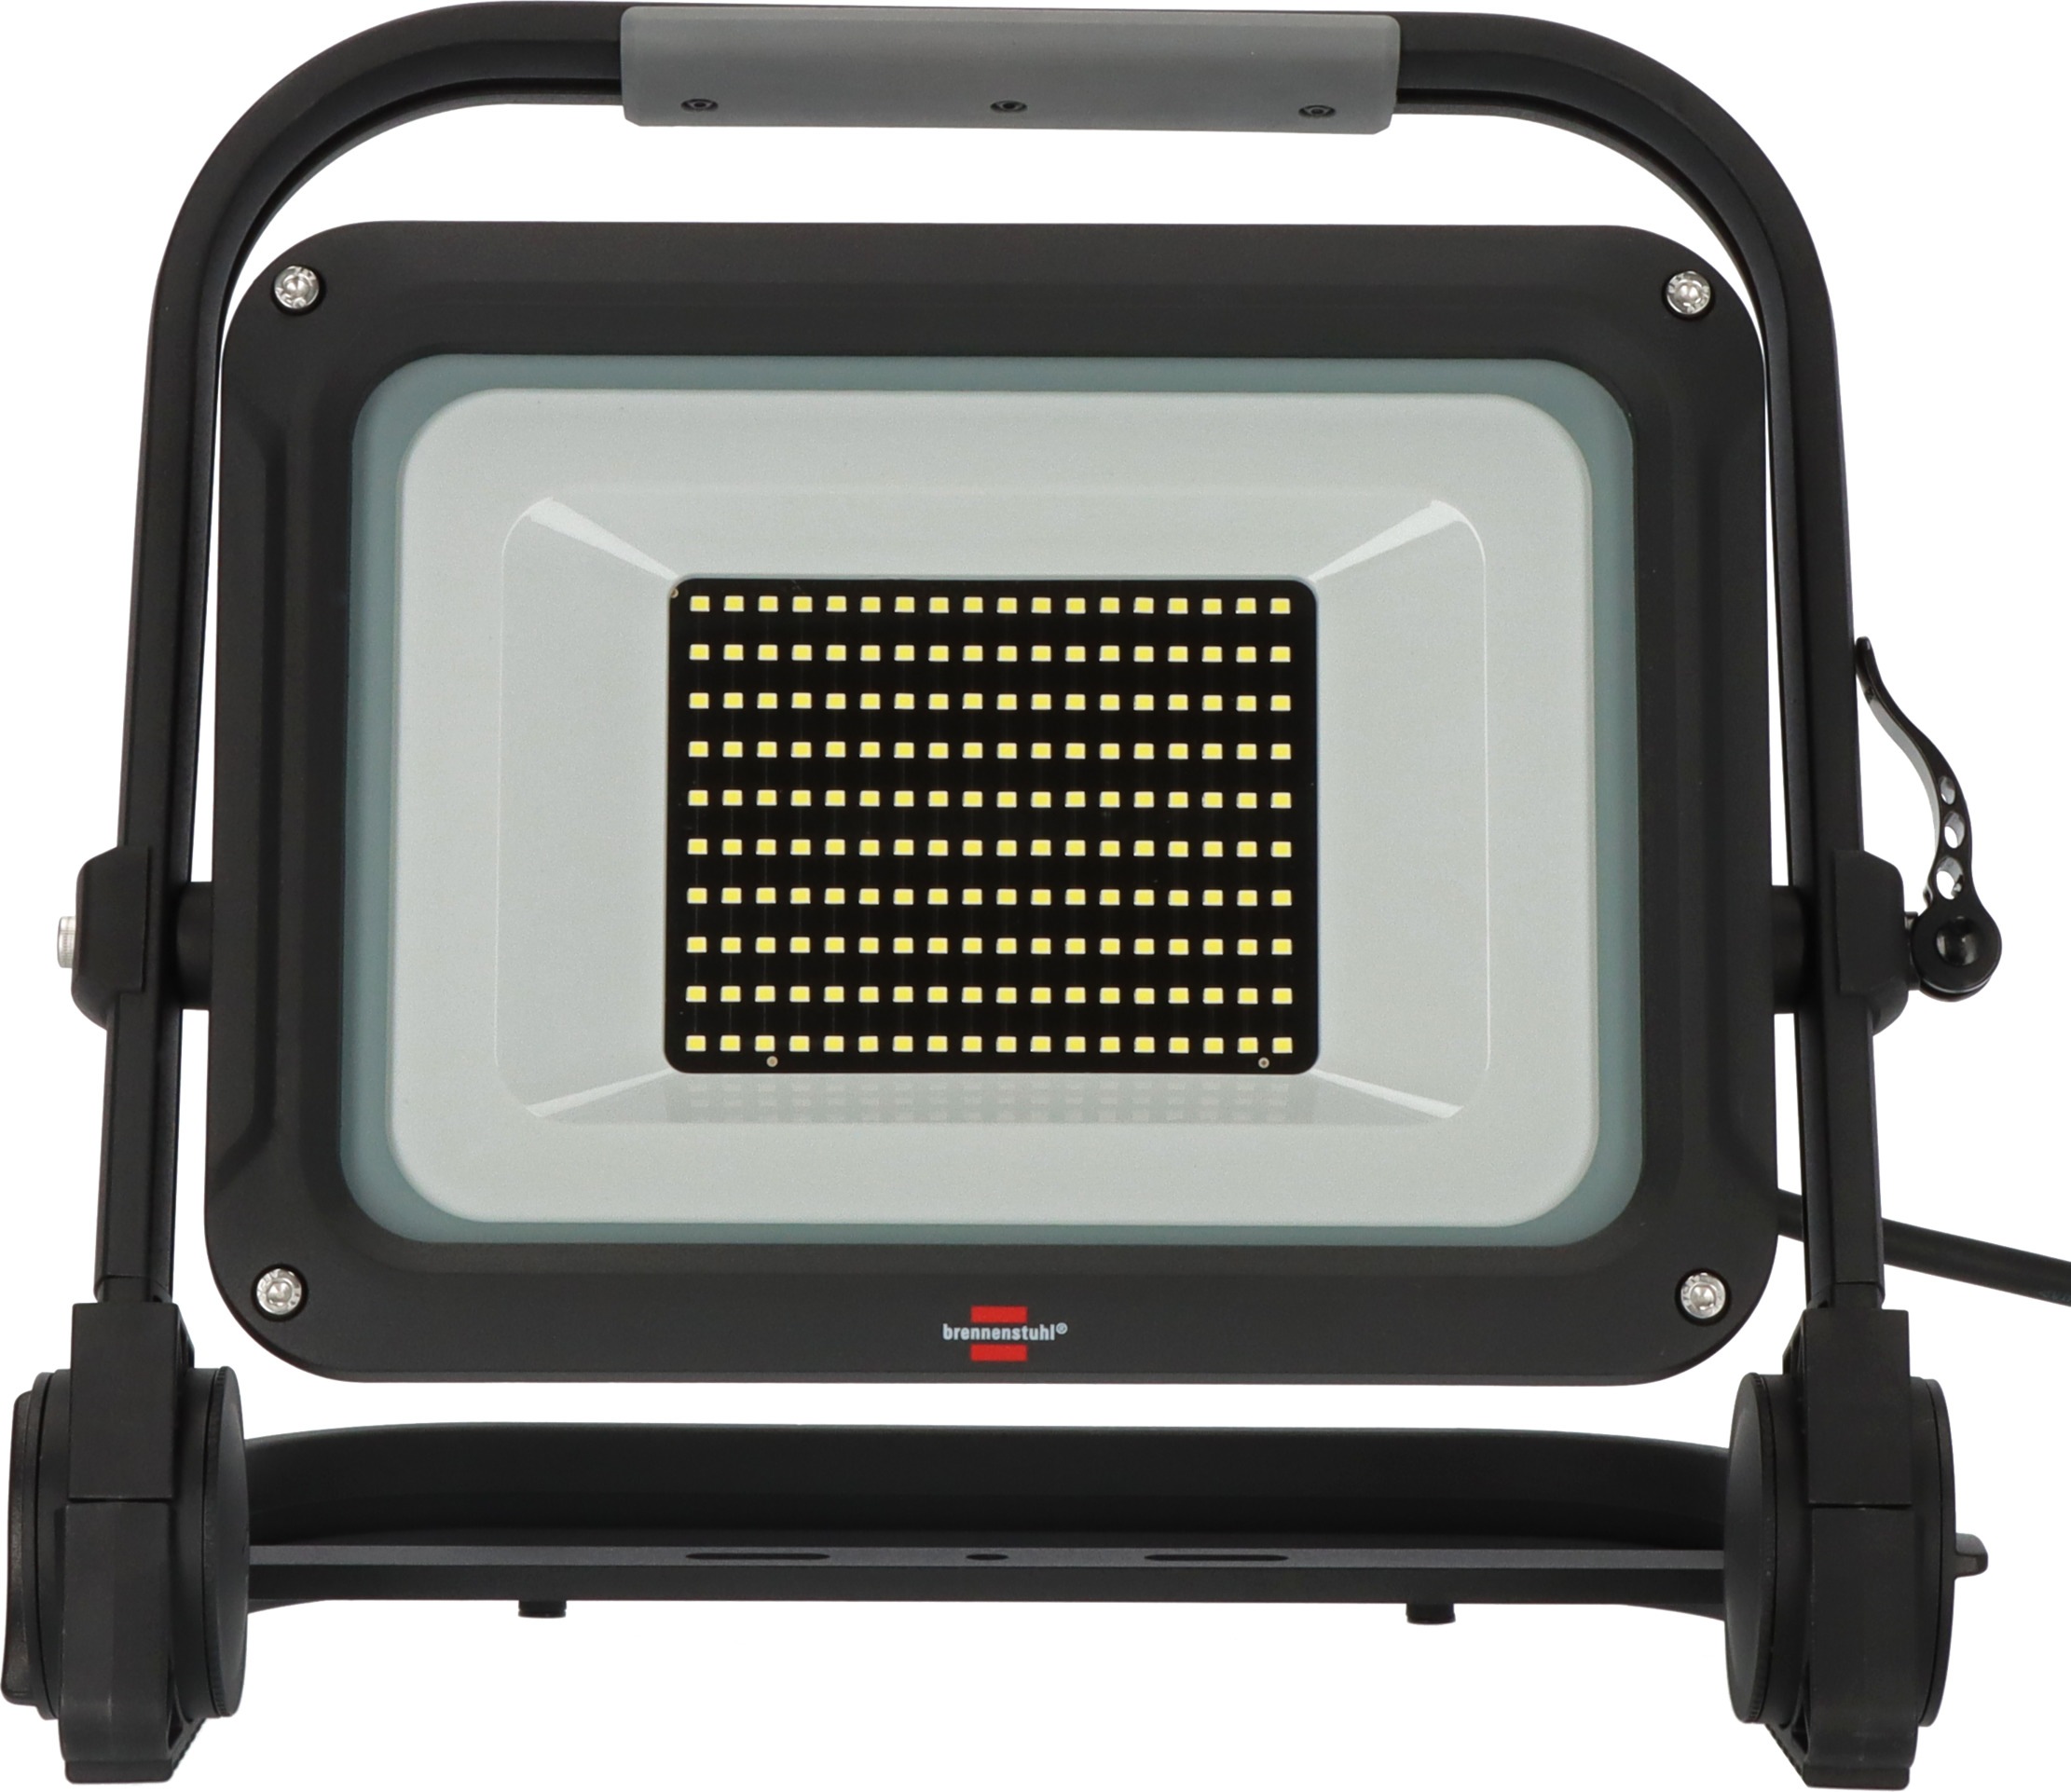 Brennenstuhl LED Baustrahler "JARO 14060 M", Leuchtmittel LED-Modul  LED fest integriert, 6500K, IP65, 5m Kabel, dimmbar